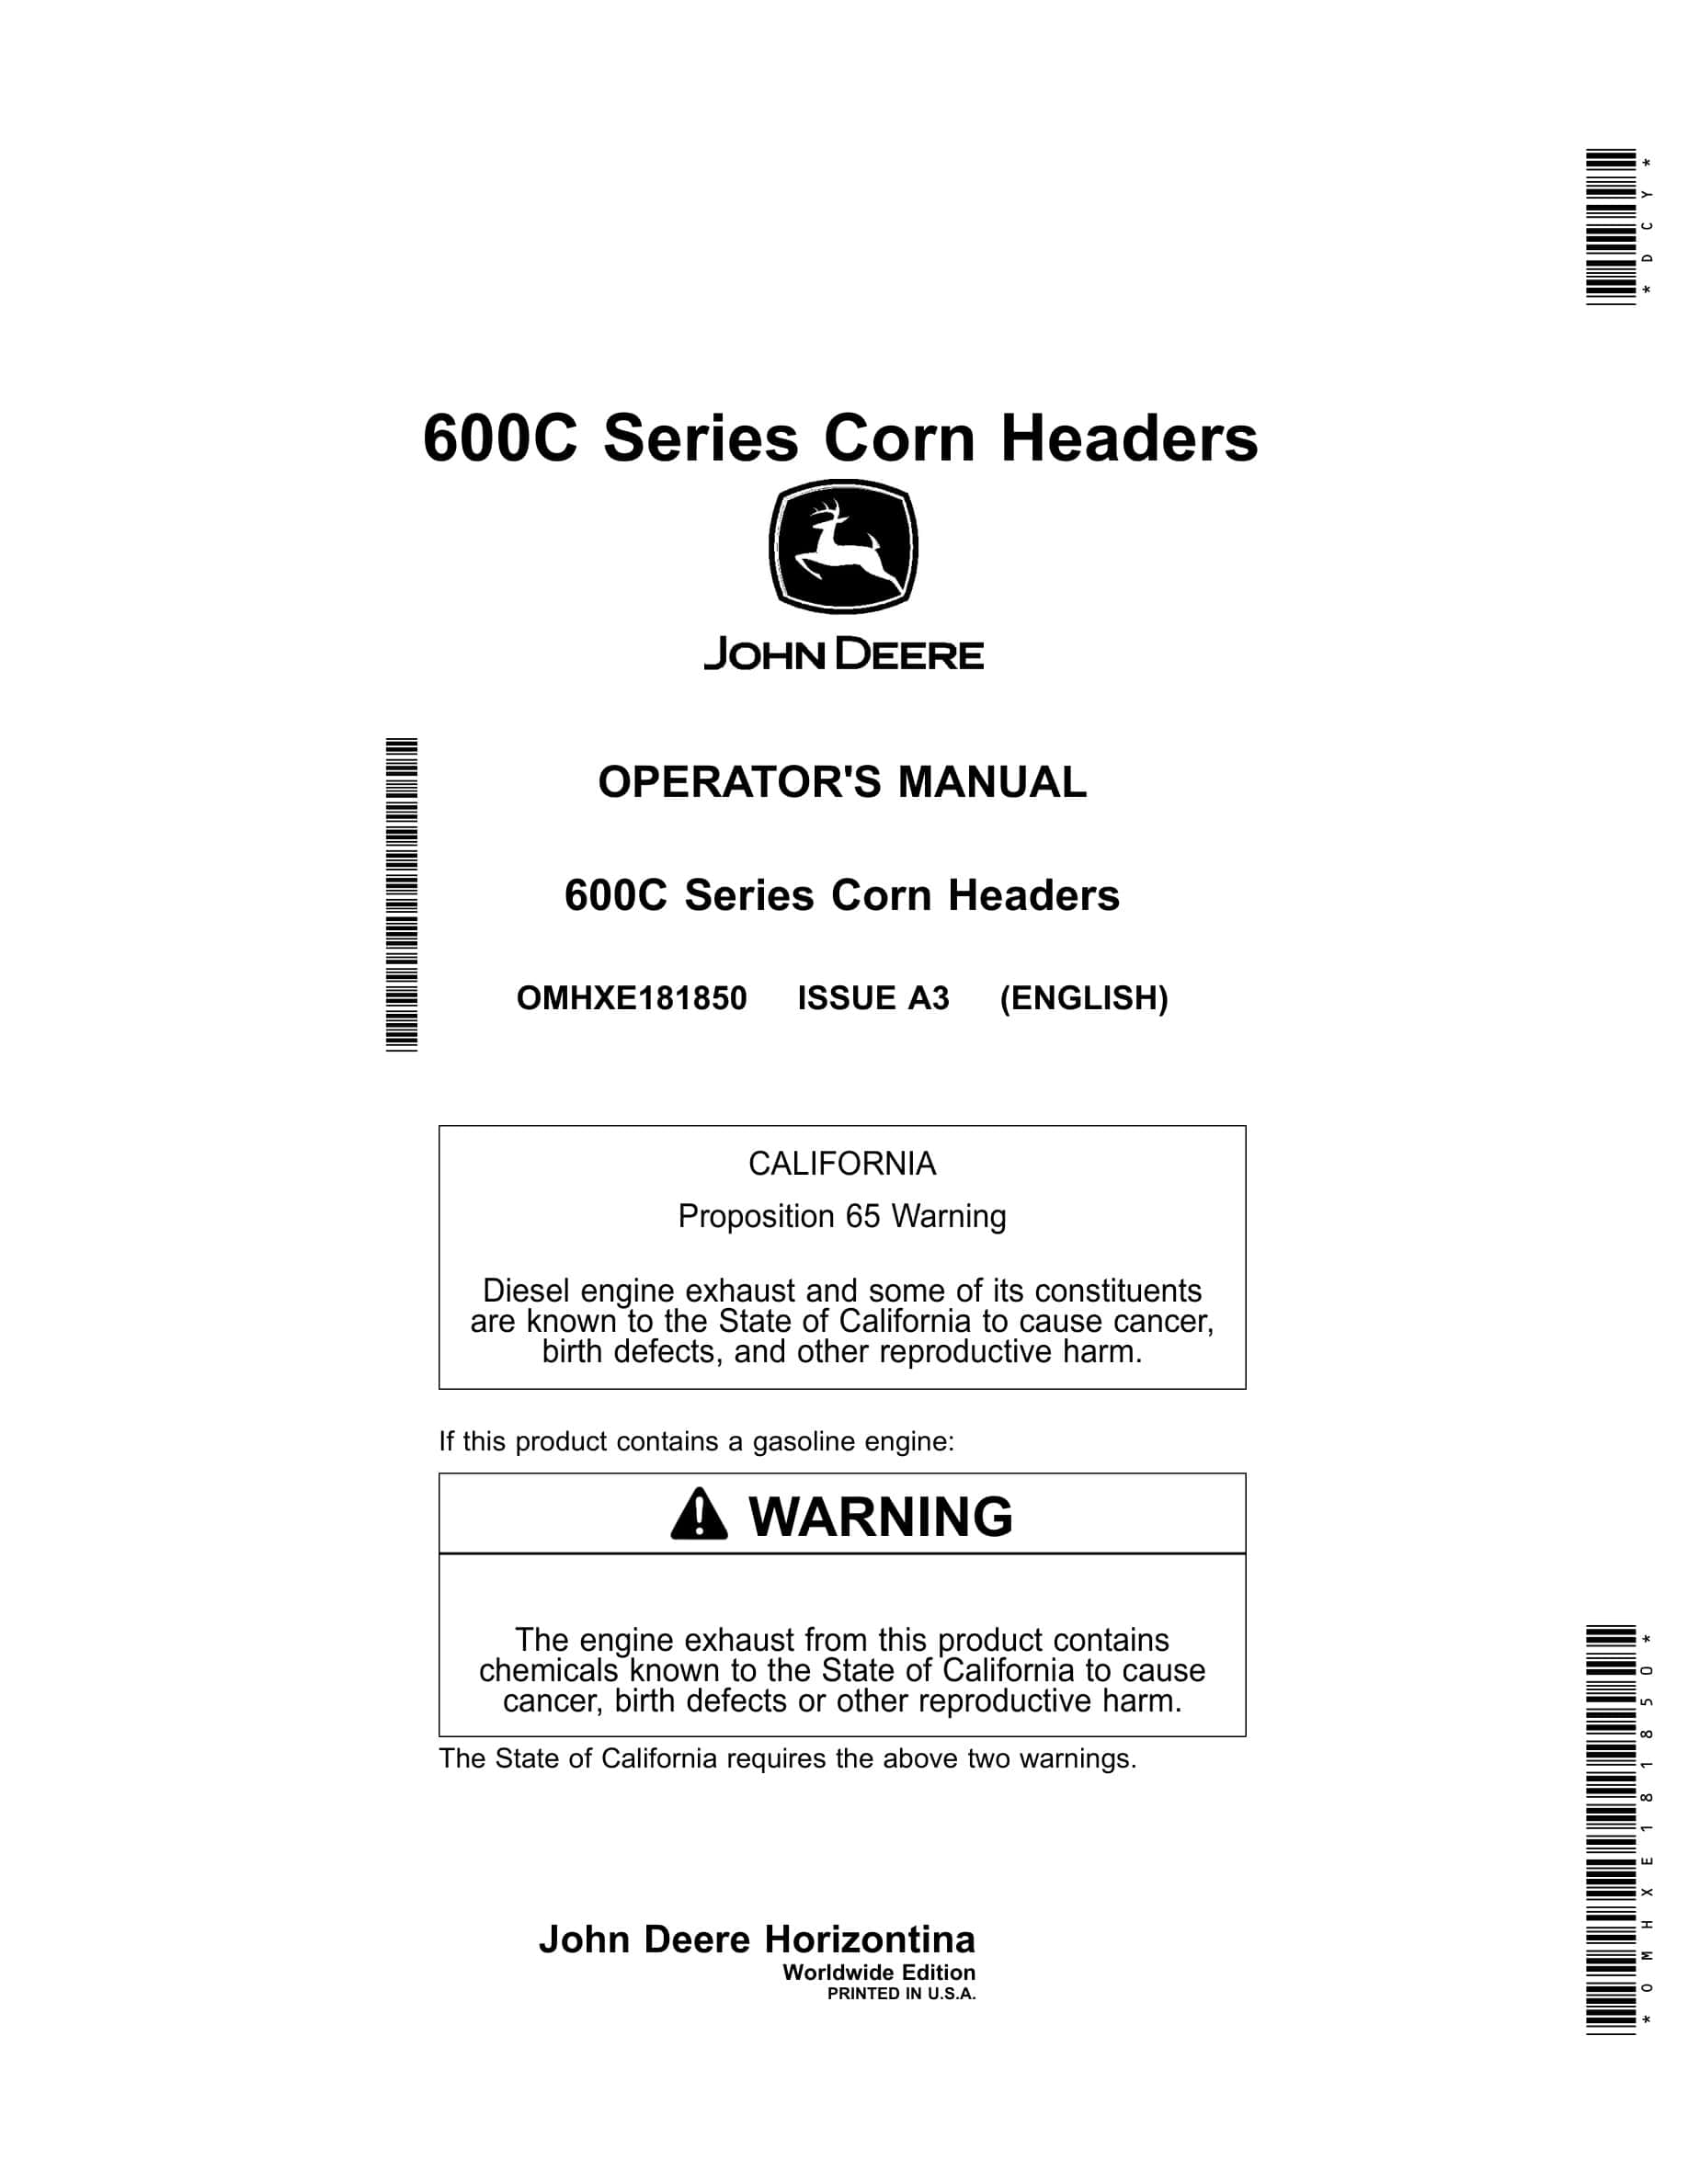 John Deere 600C Series Corn Headers Operator Manual OMHXE181850-1